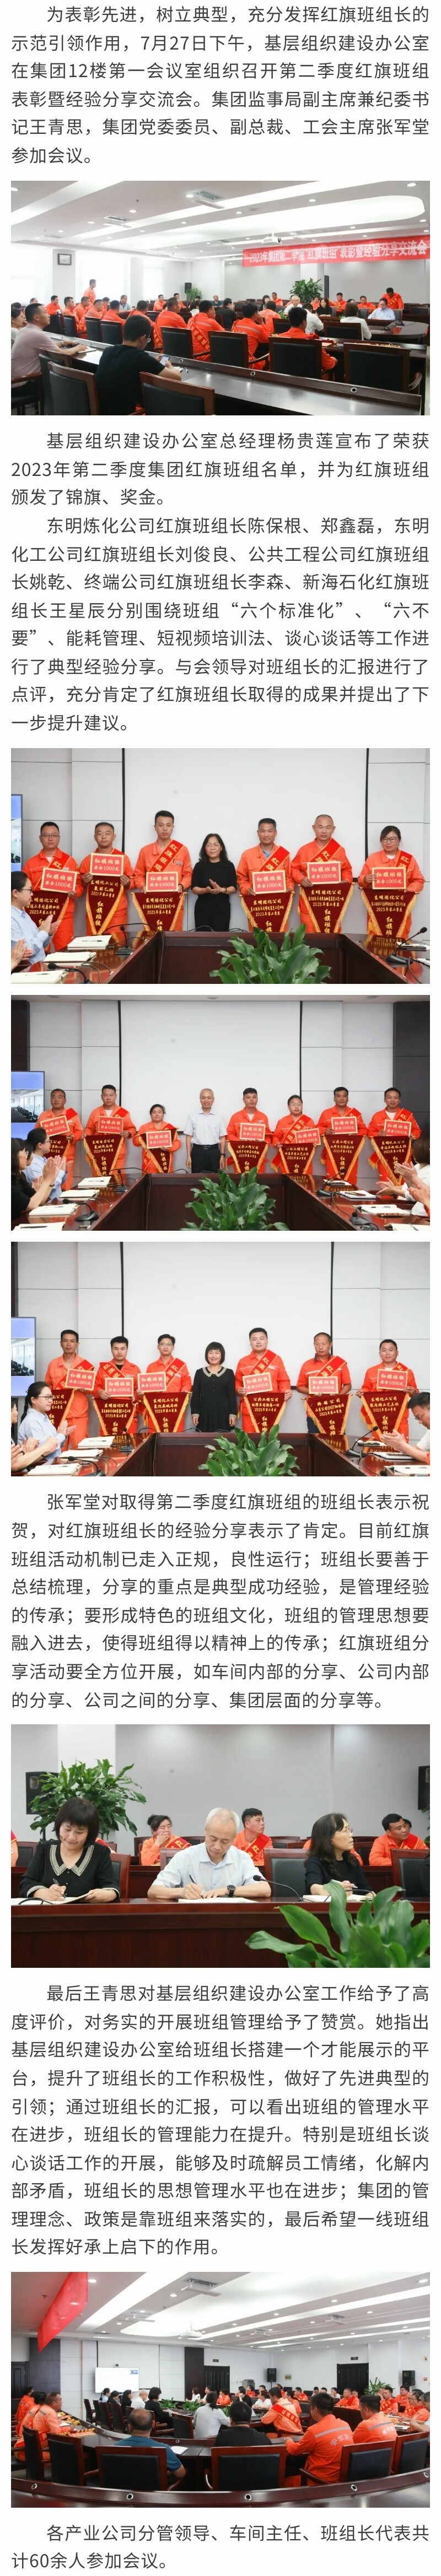 东明石化集团党委组织召开2023年度第二季度红旗班组表彰暨经验分享交流会